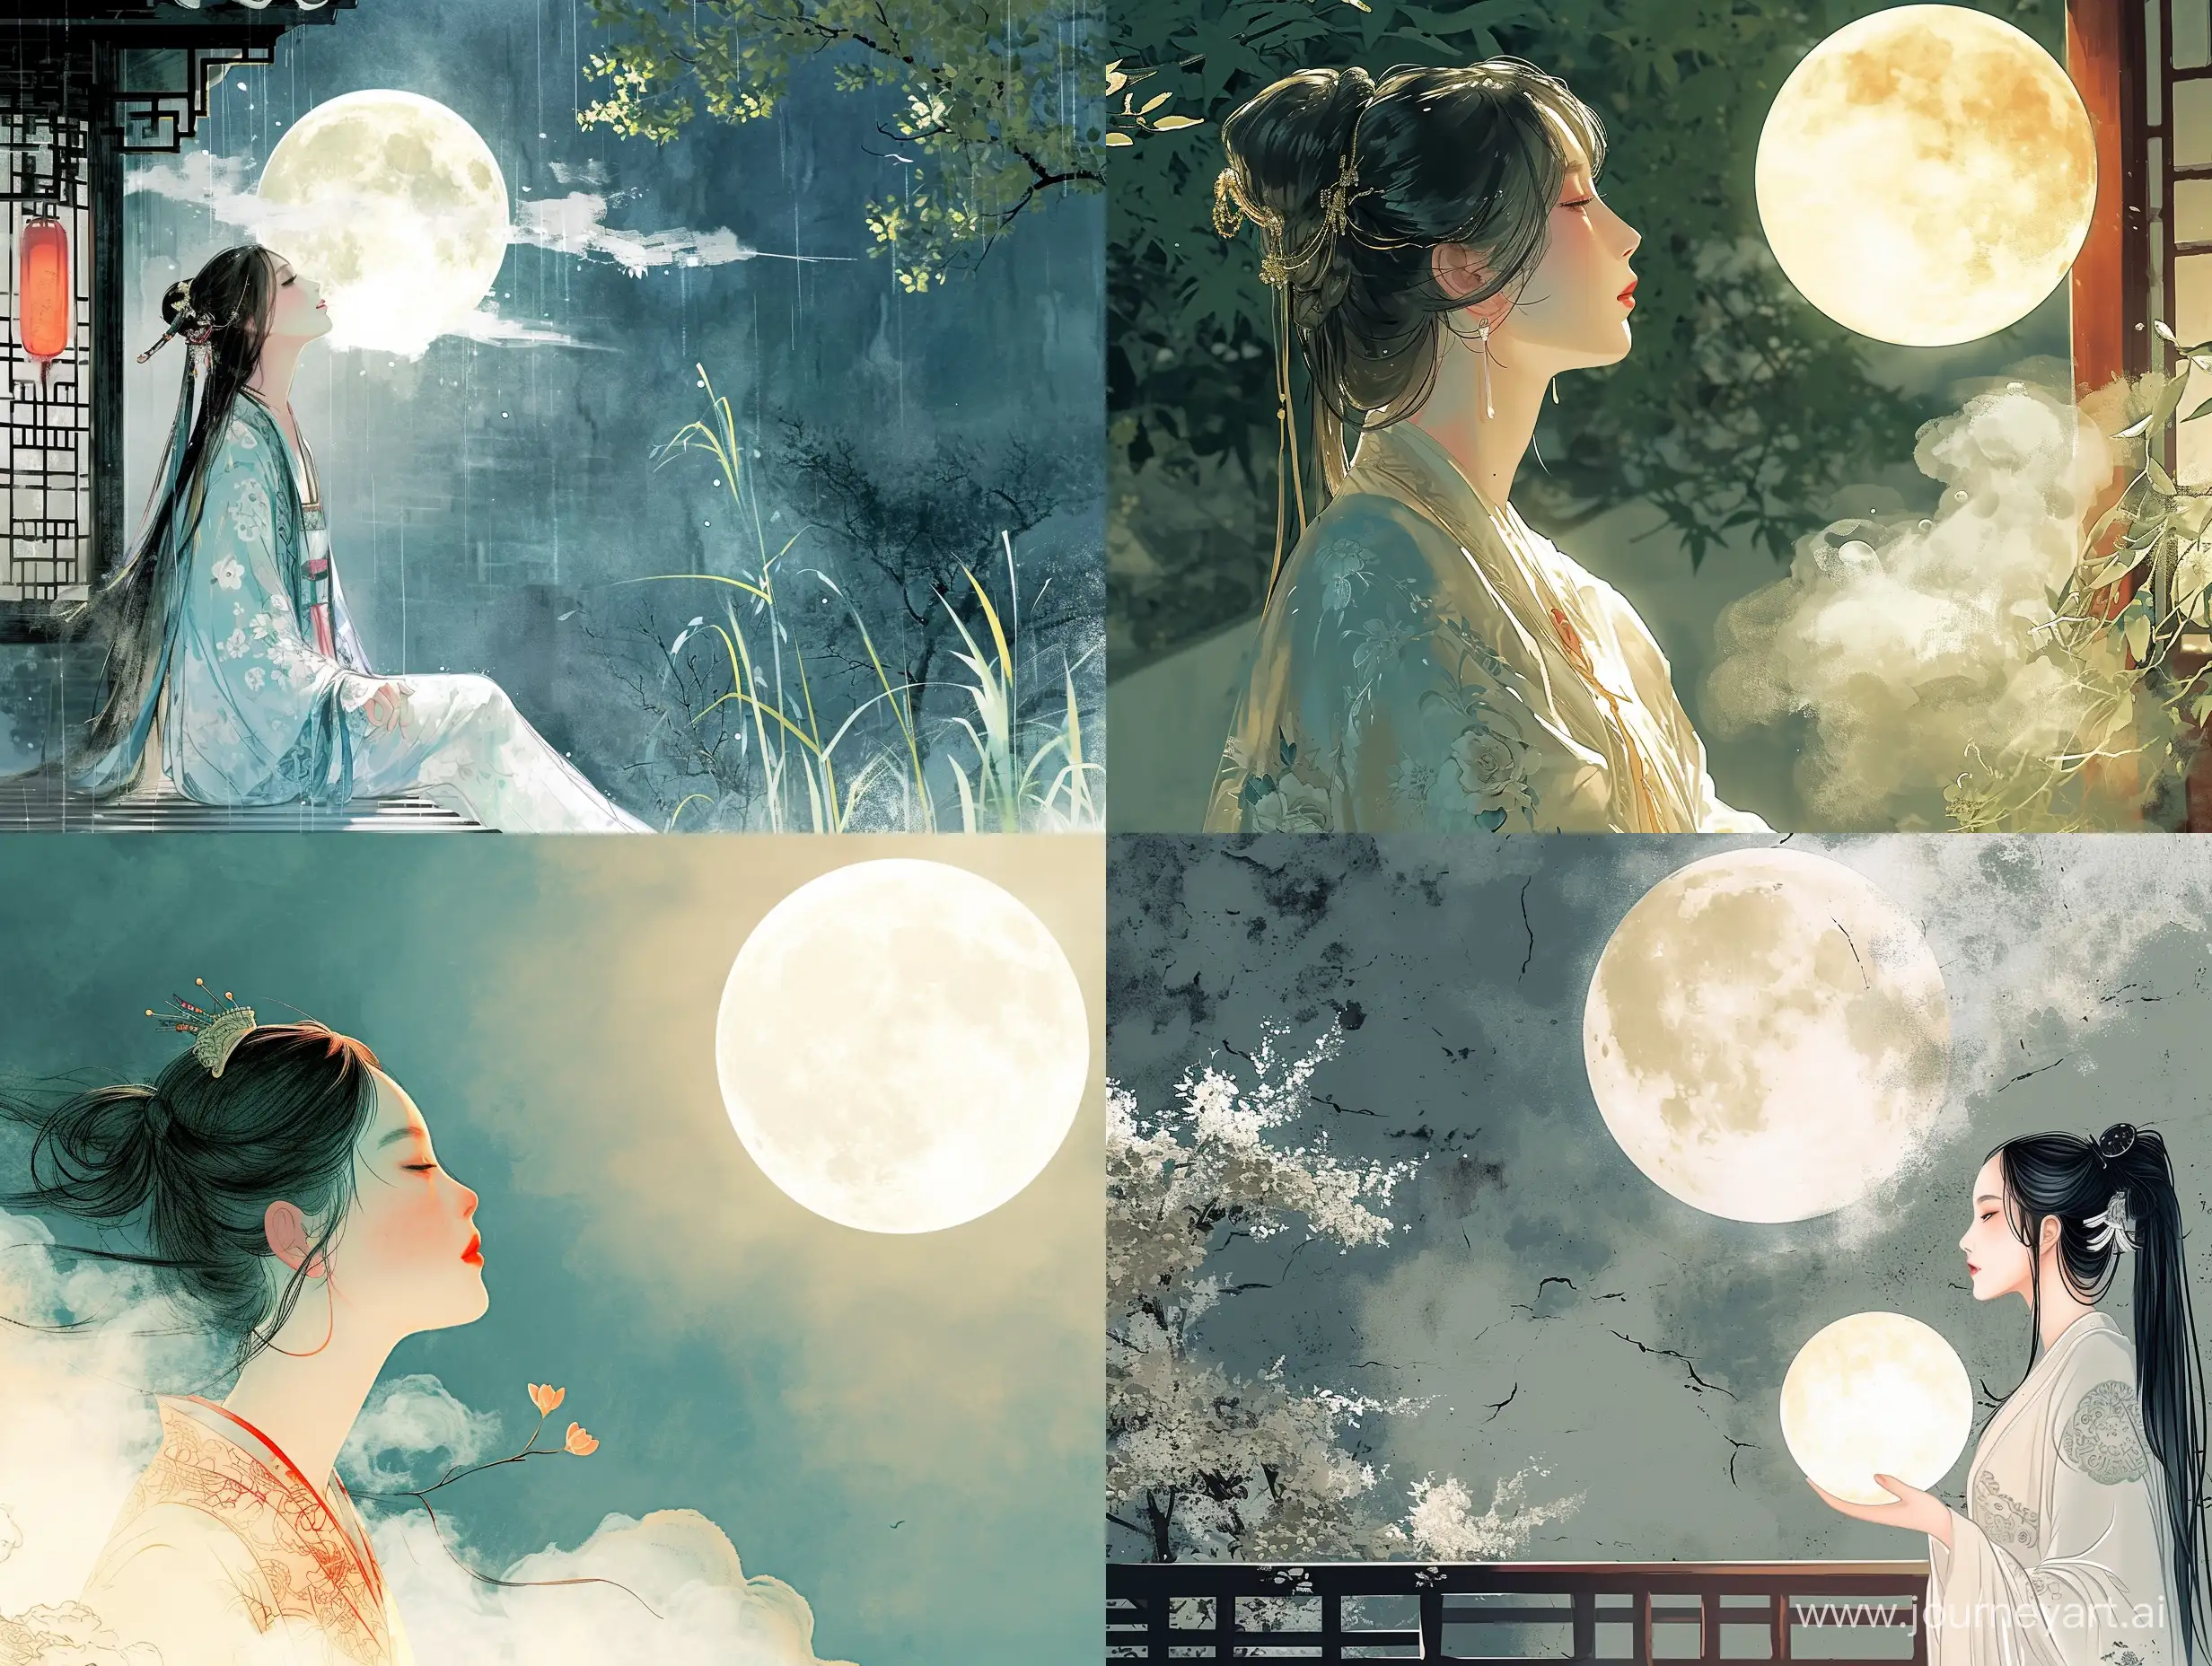 一个美女在后花园拜月时，忽然轻风吹来，一块浮云将那皎洁的明月遮住。彩色中国风，水墨画风格，二次元漫画，高清，高级感，大师之作，古代，东方美学。